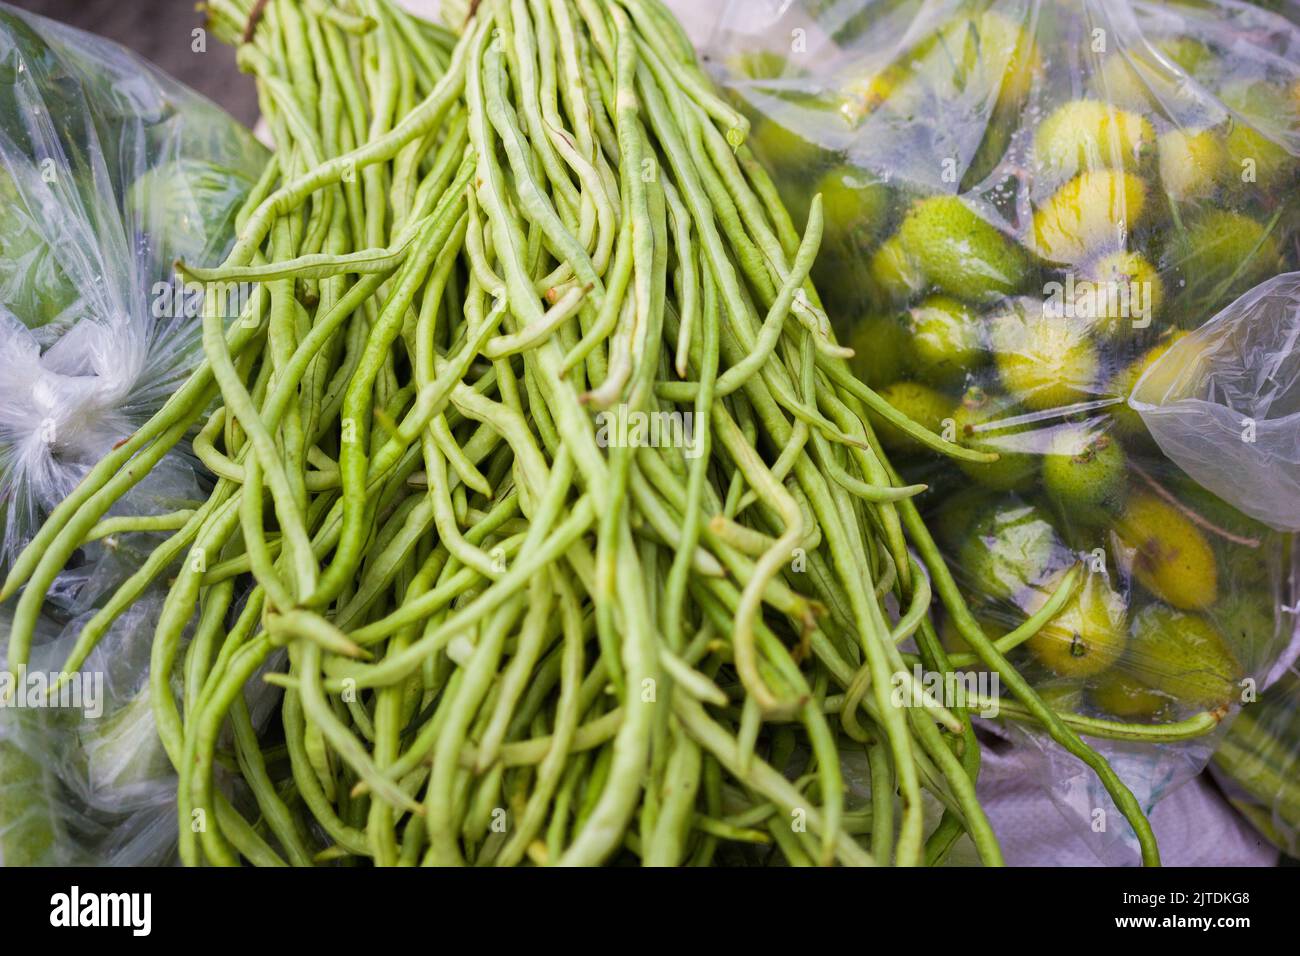 Gli ortaggi sono una delle fonti di reddito primarie per gli agricoltori del Bangladesh. In precedenza era solo per il consumo delle famiglie, ma ora diventano colture cash. Foto Stock